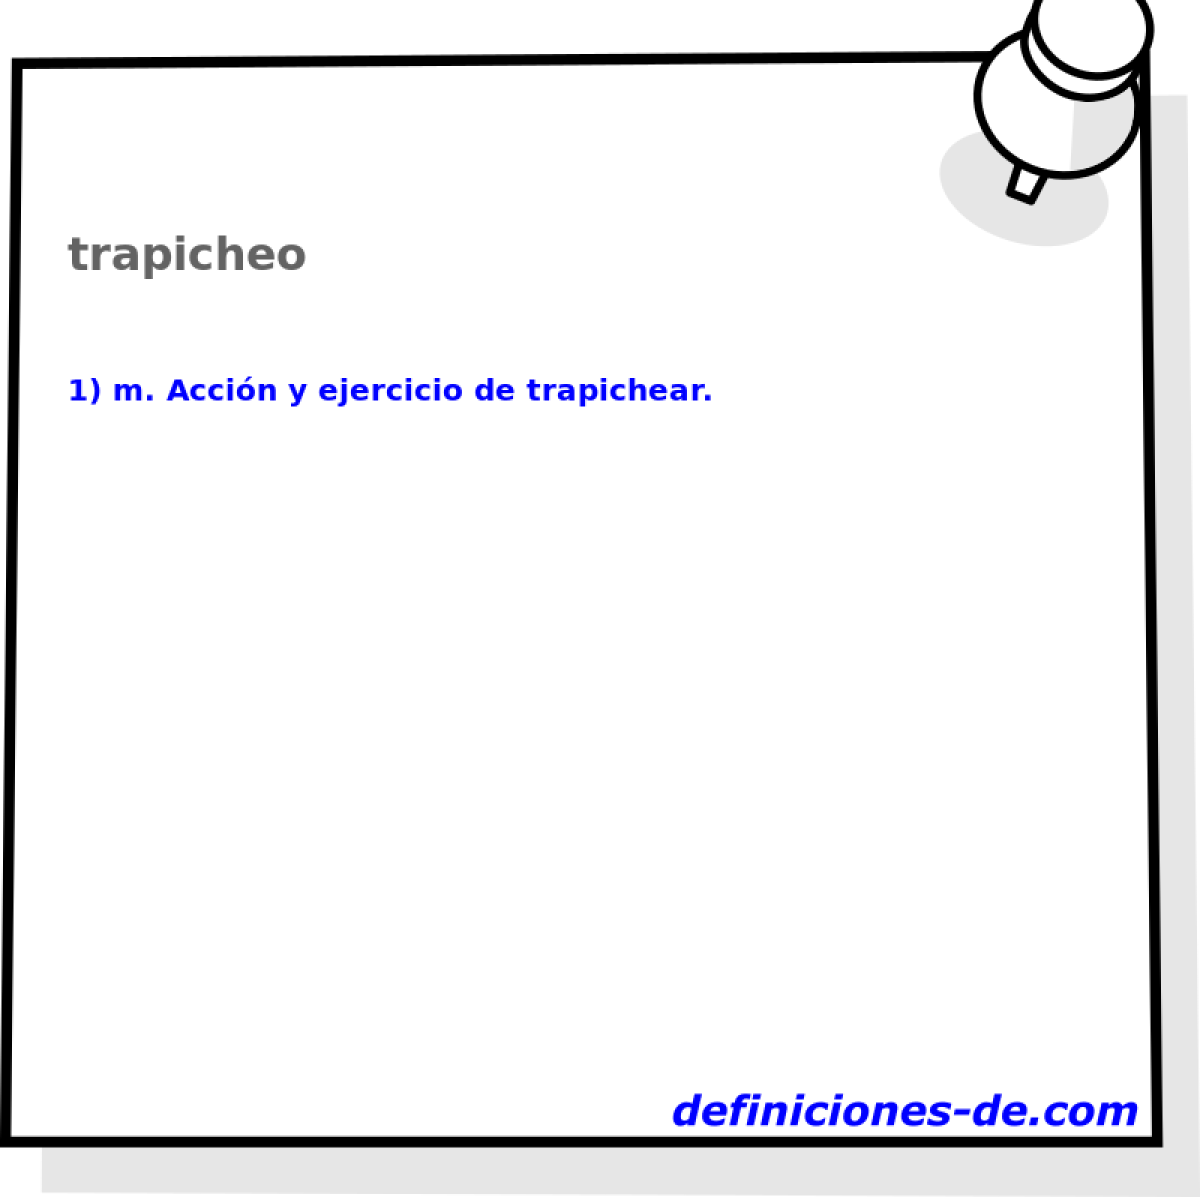 trapicheo 